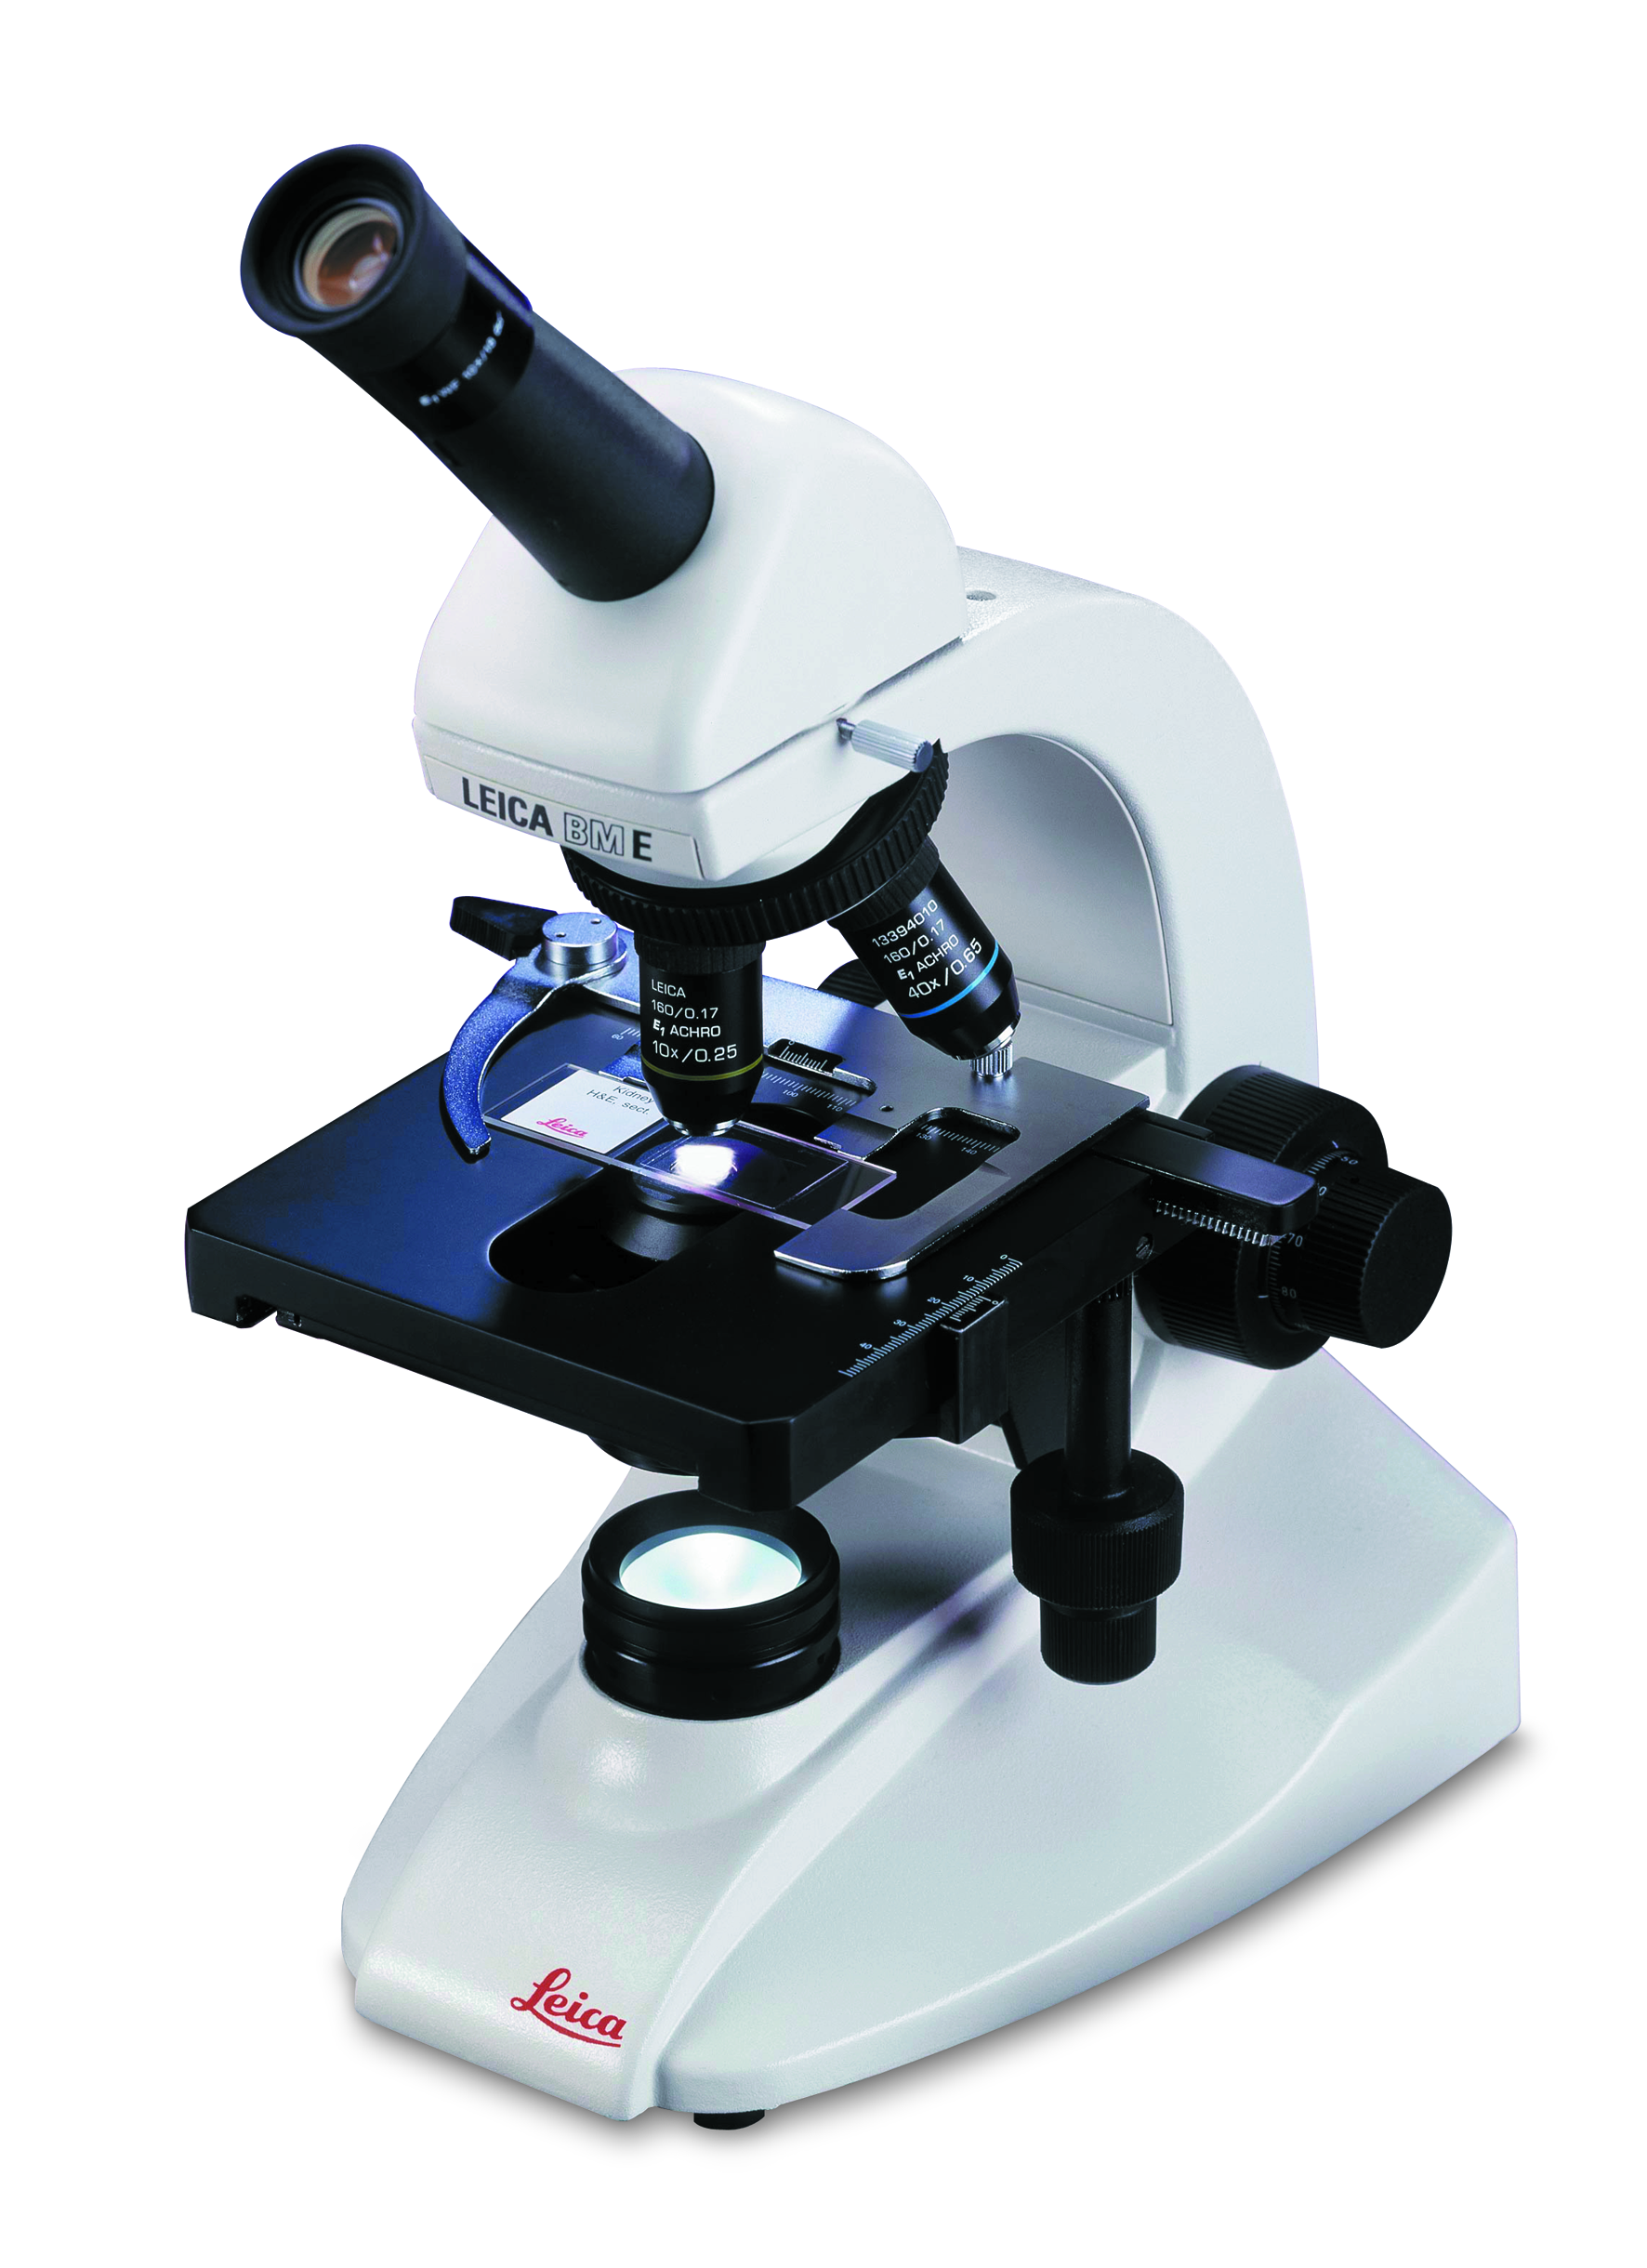 Los componentes ópticos de alta calidad y la durabilidad hacen del sistema Leica BM E el mejor microscopio educativo de su clase.